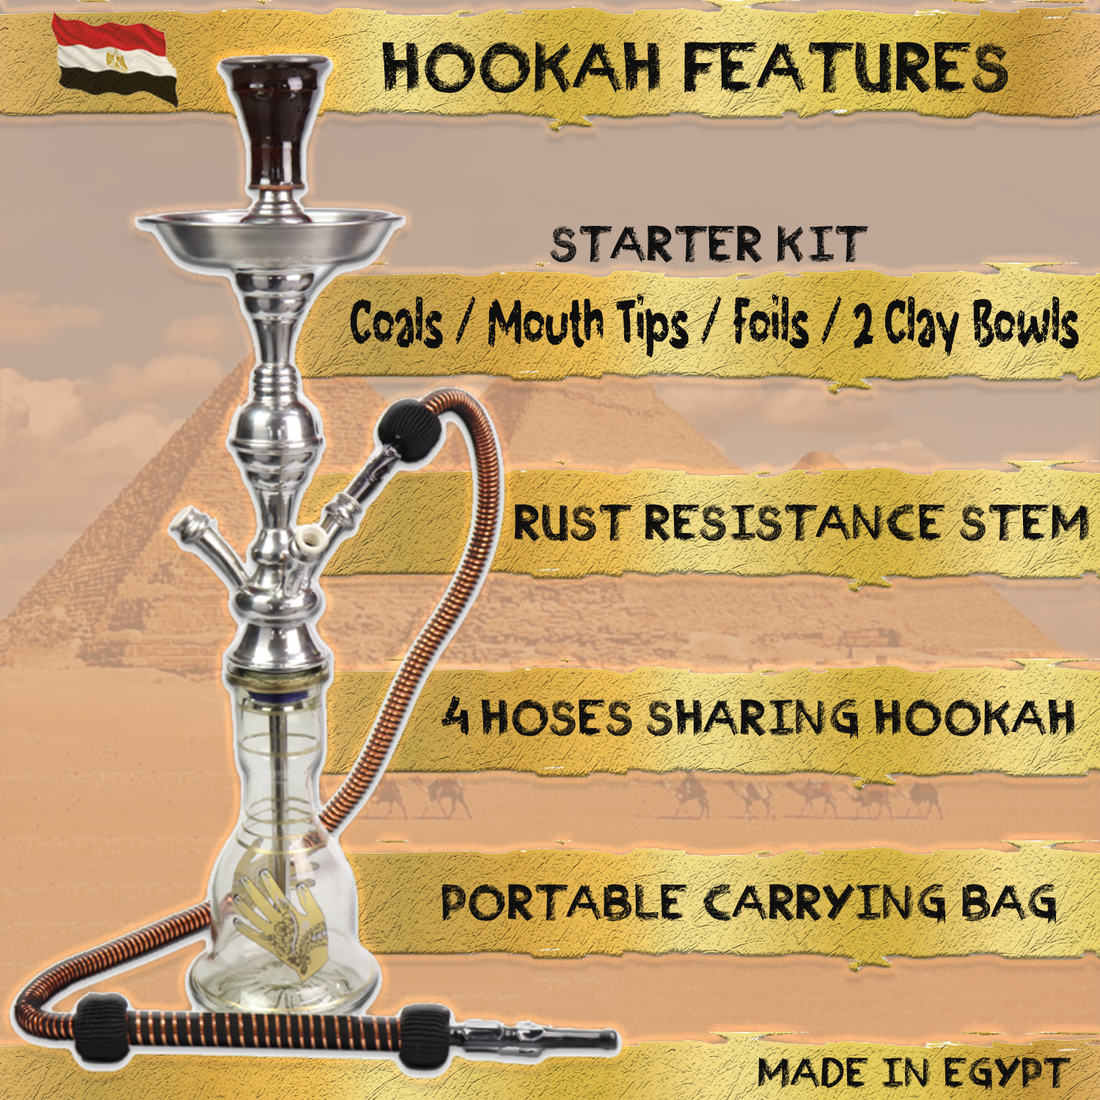 4 Hose Egyptian Sharing Hookah  Complete Set w/ Bag